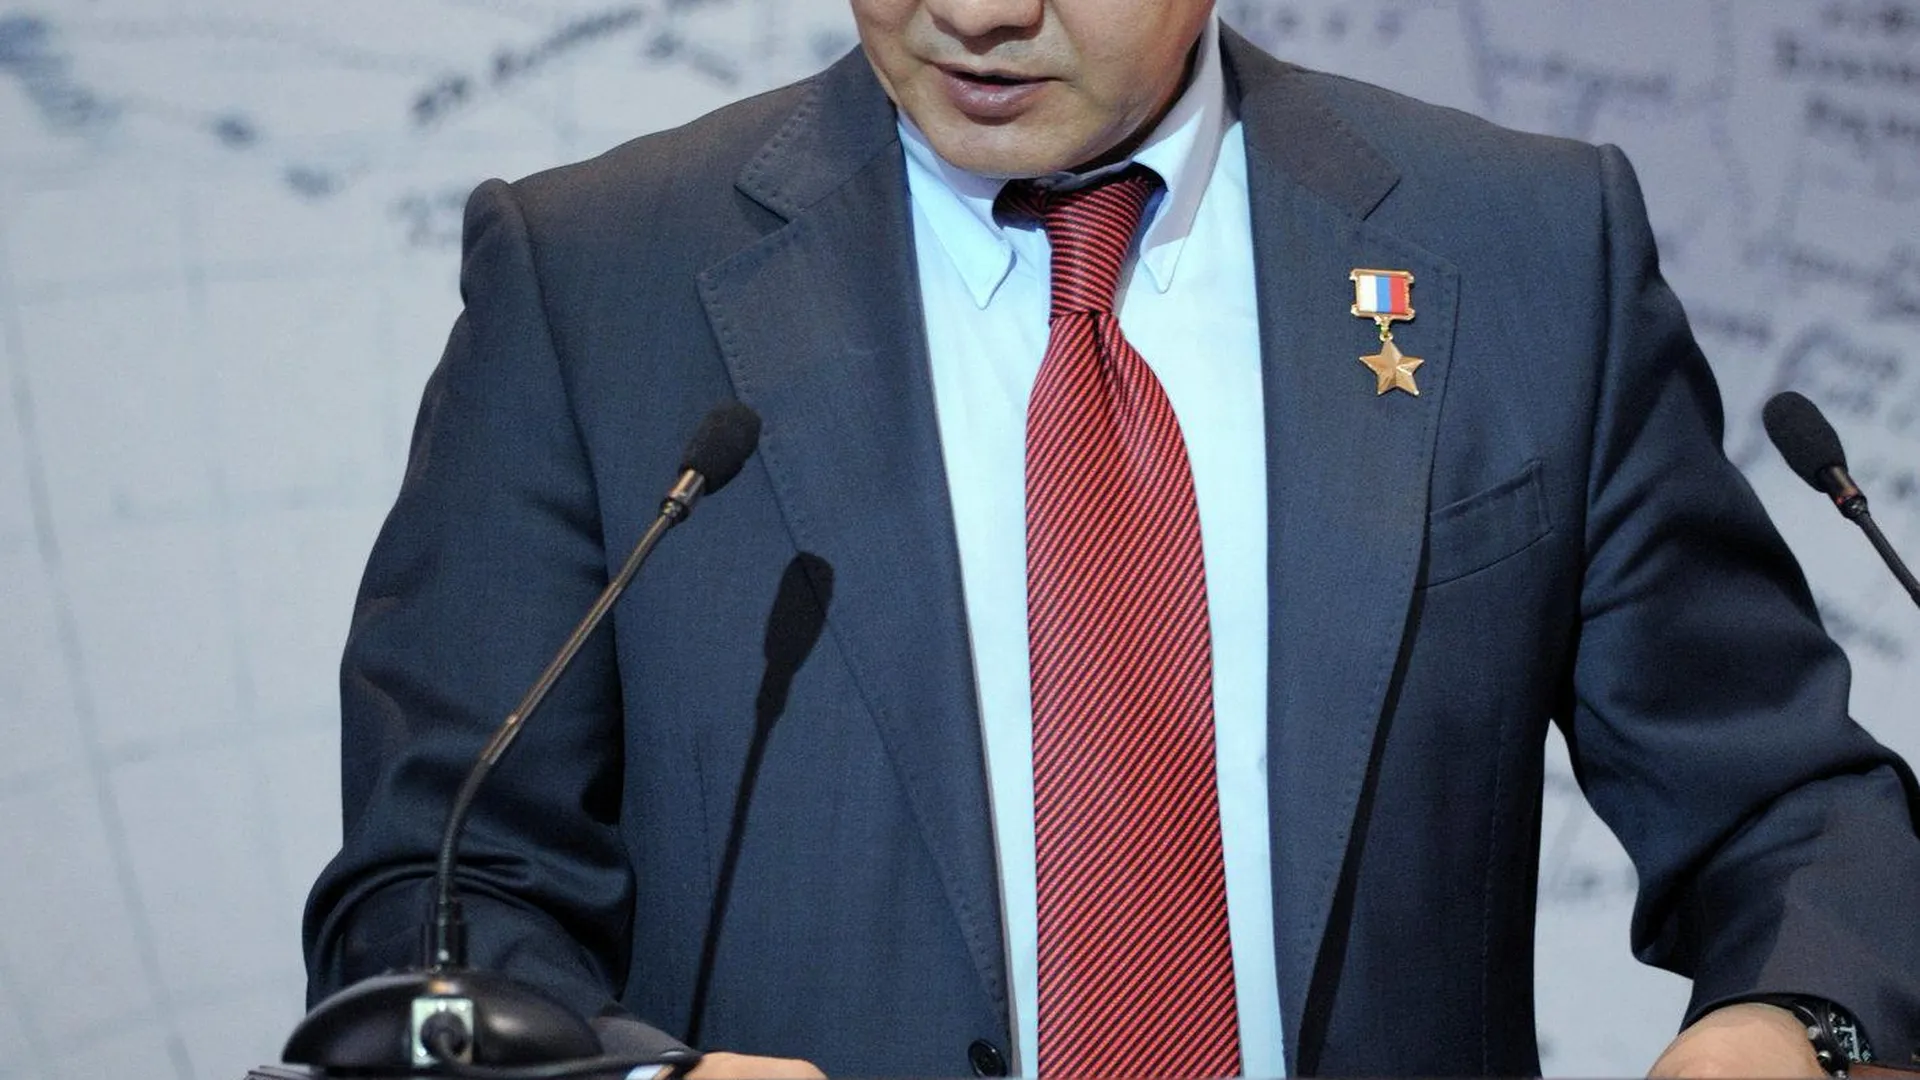 Шойгу вошел в число «отличников» в рейтинге российских губернаторов